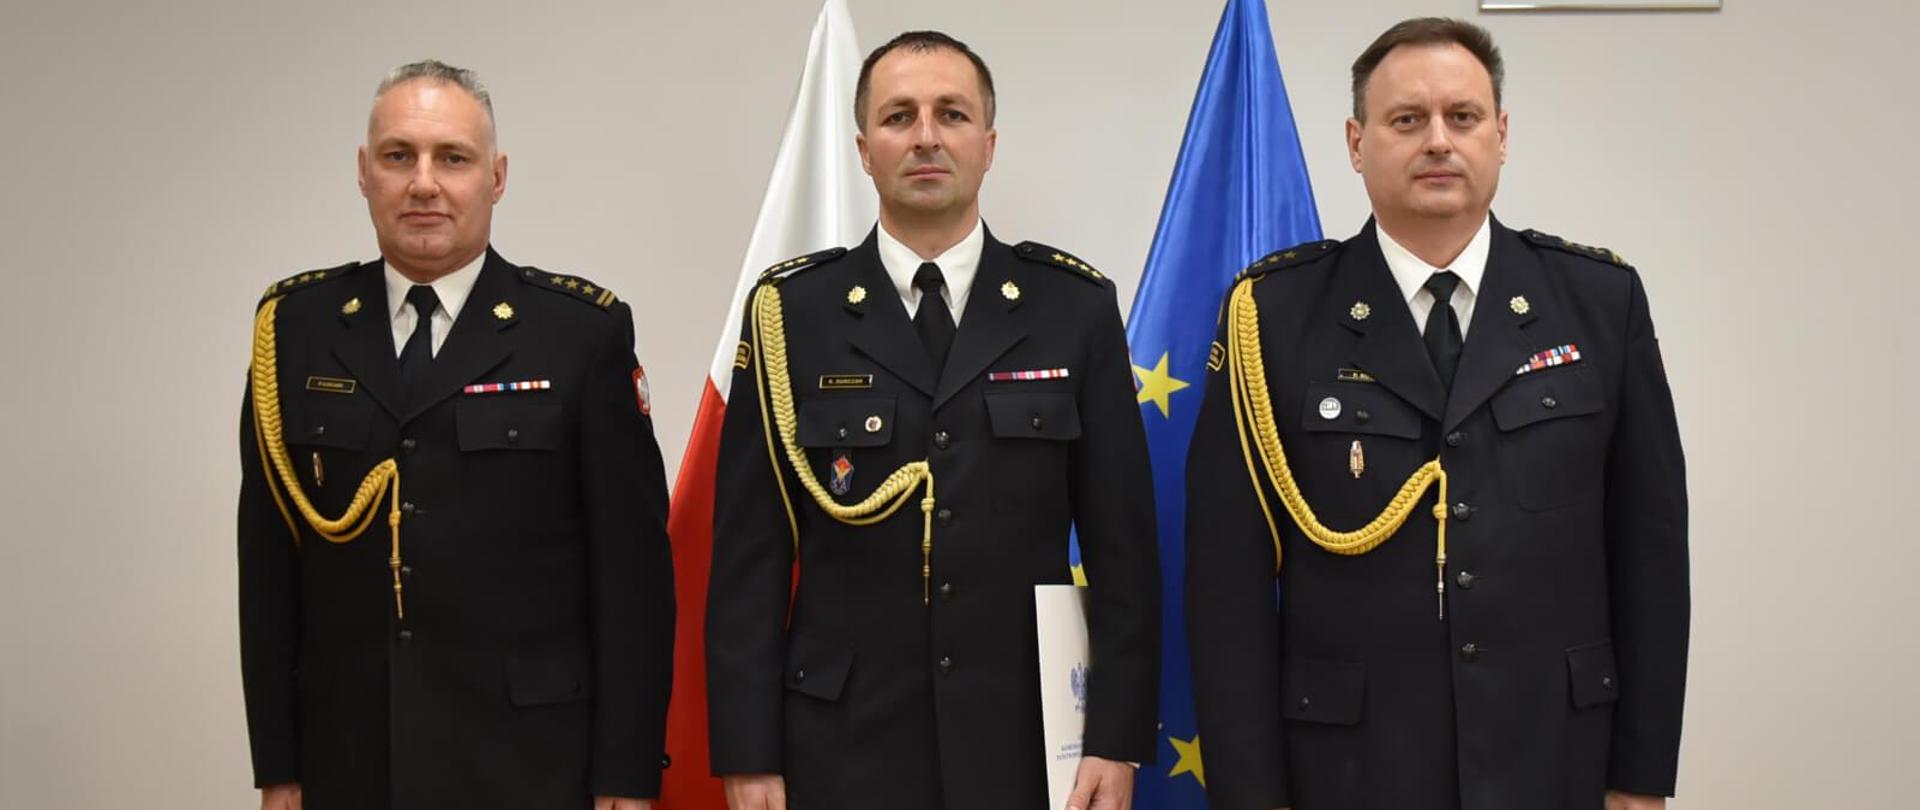 trzech strażaków pozujących do zdjęcia w gabinecie, za nimi flagi polski i unii europejskiej